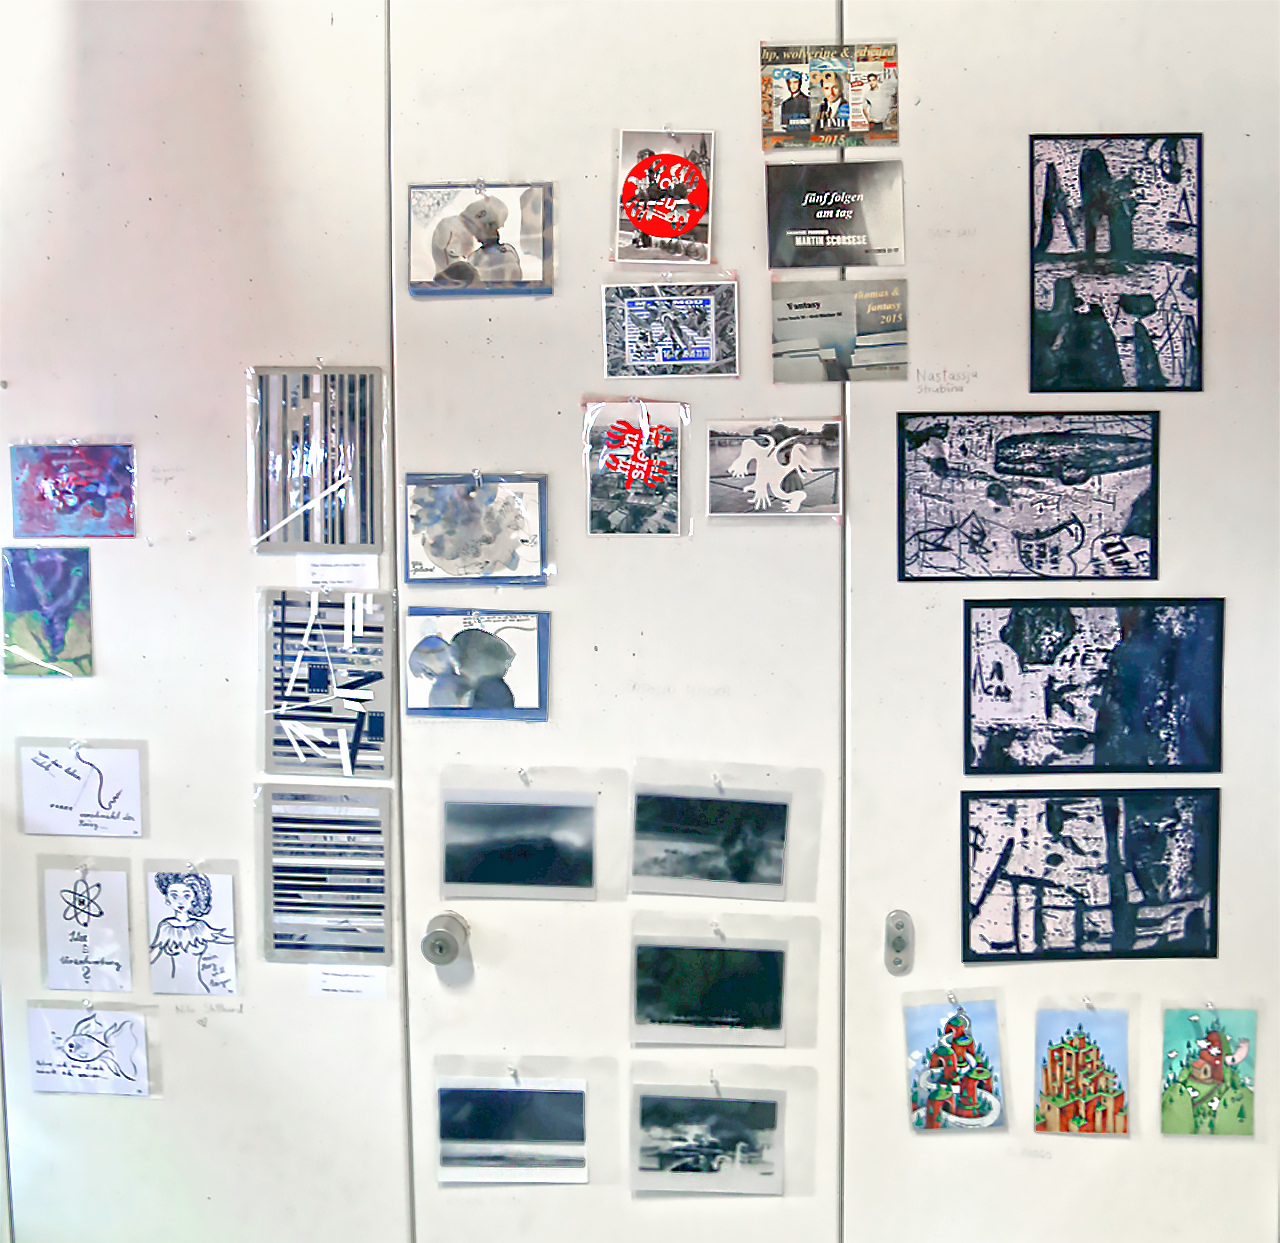 Künstler Postkarten Exhibition 2015, picture 2